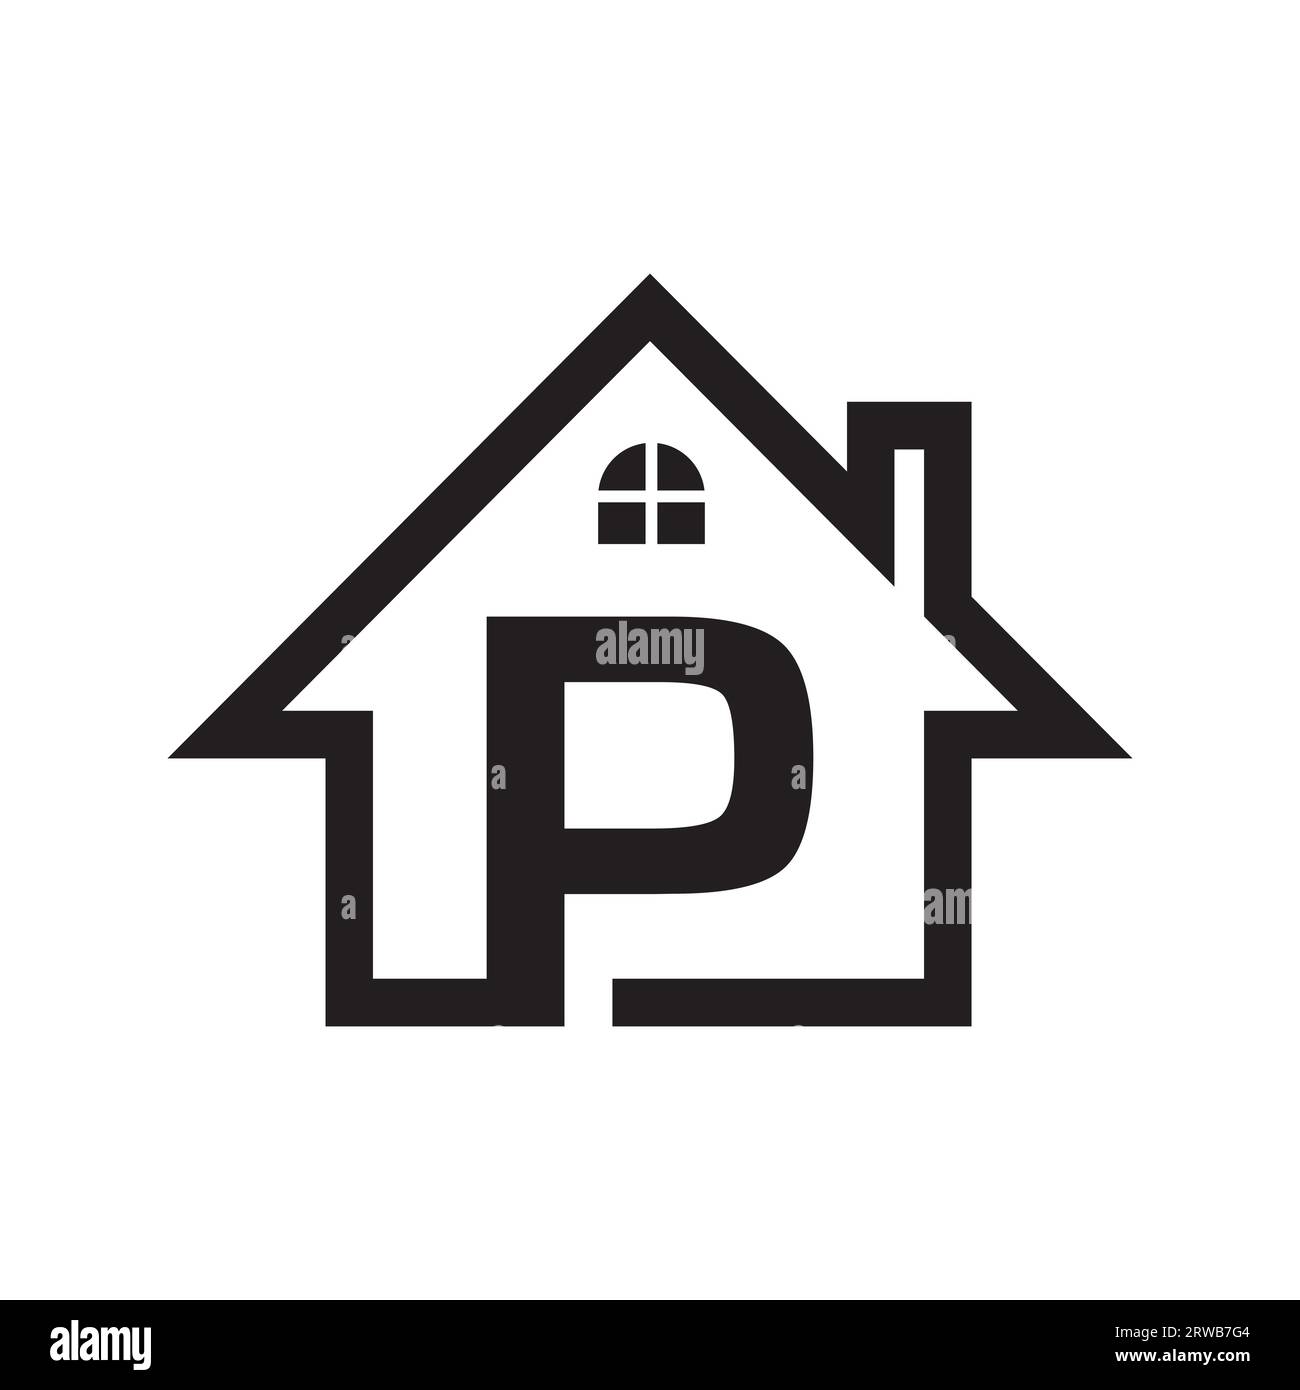 P real estate logo design. Real estate company logo design. Construction and real-estate company logo vector Stock Vector